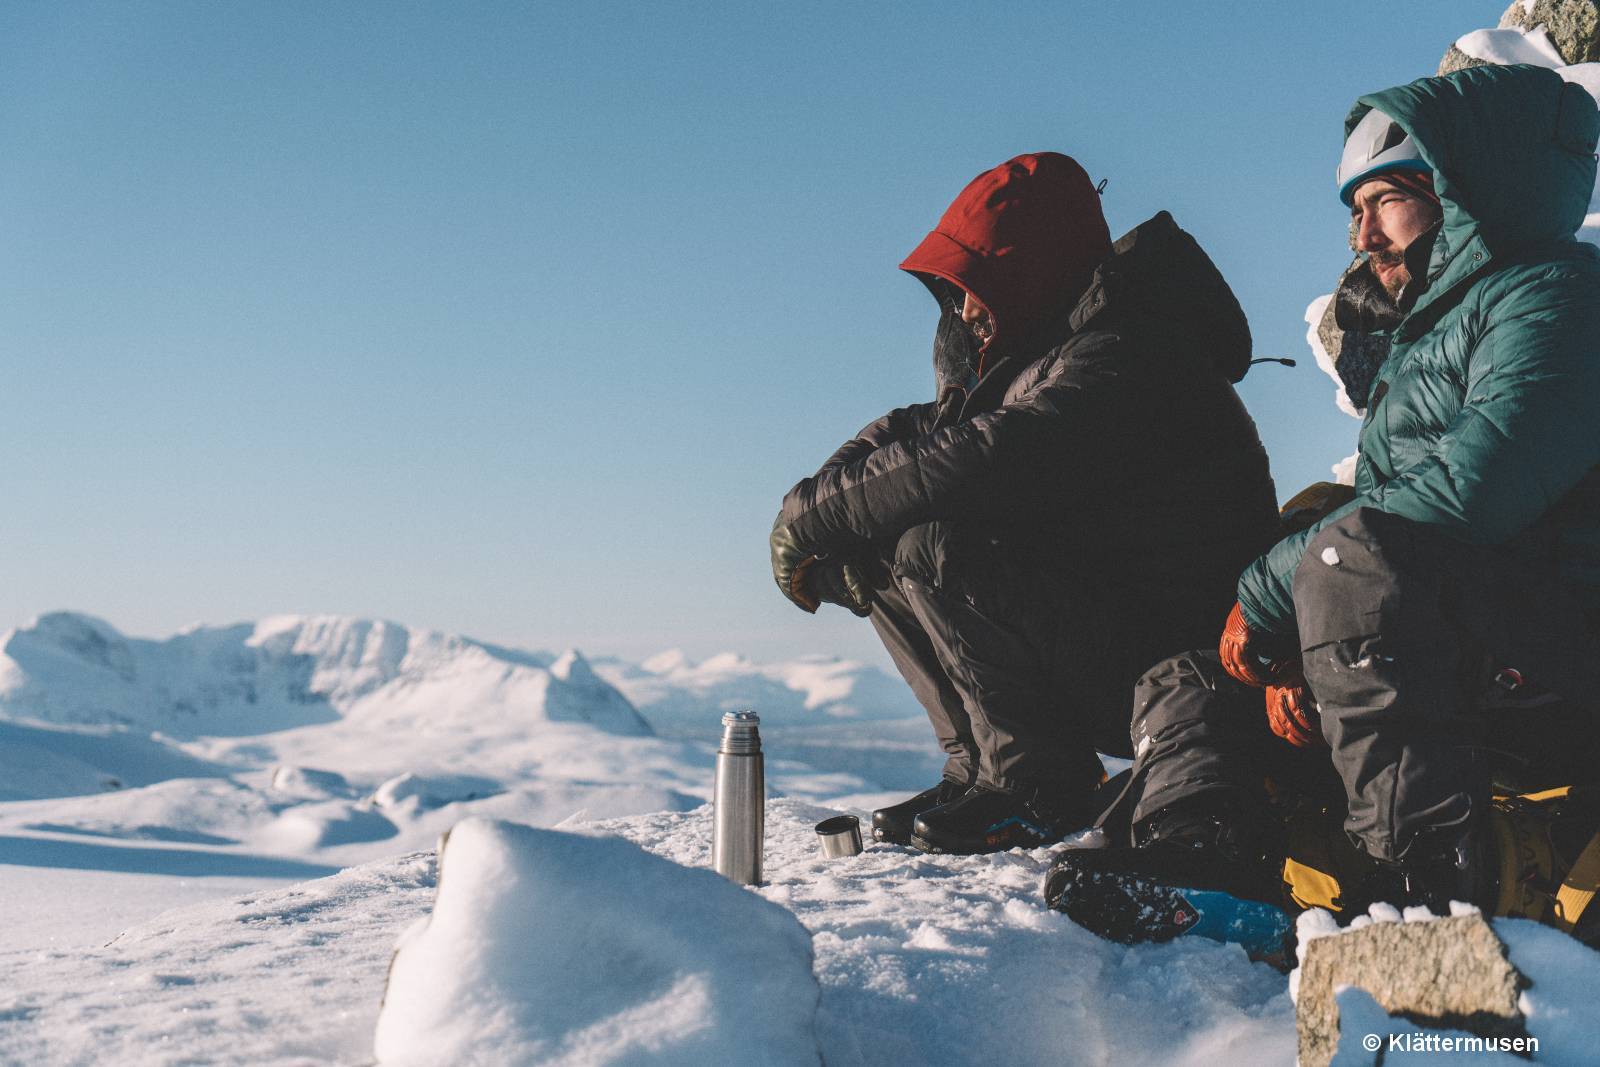 Klättermusen zwei Bergsteiger im Winter, schneebedeckte Berggipfel